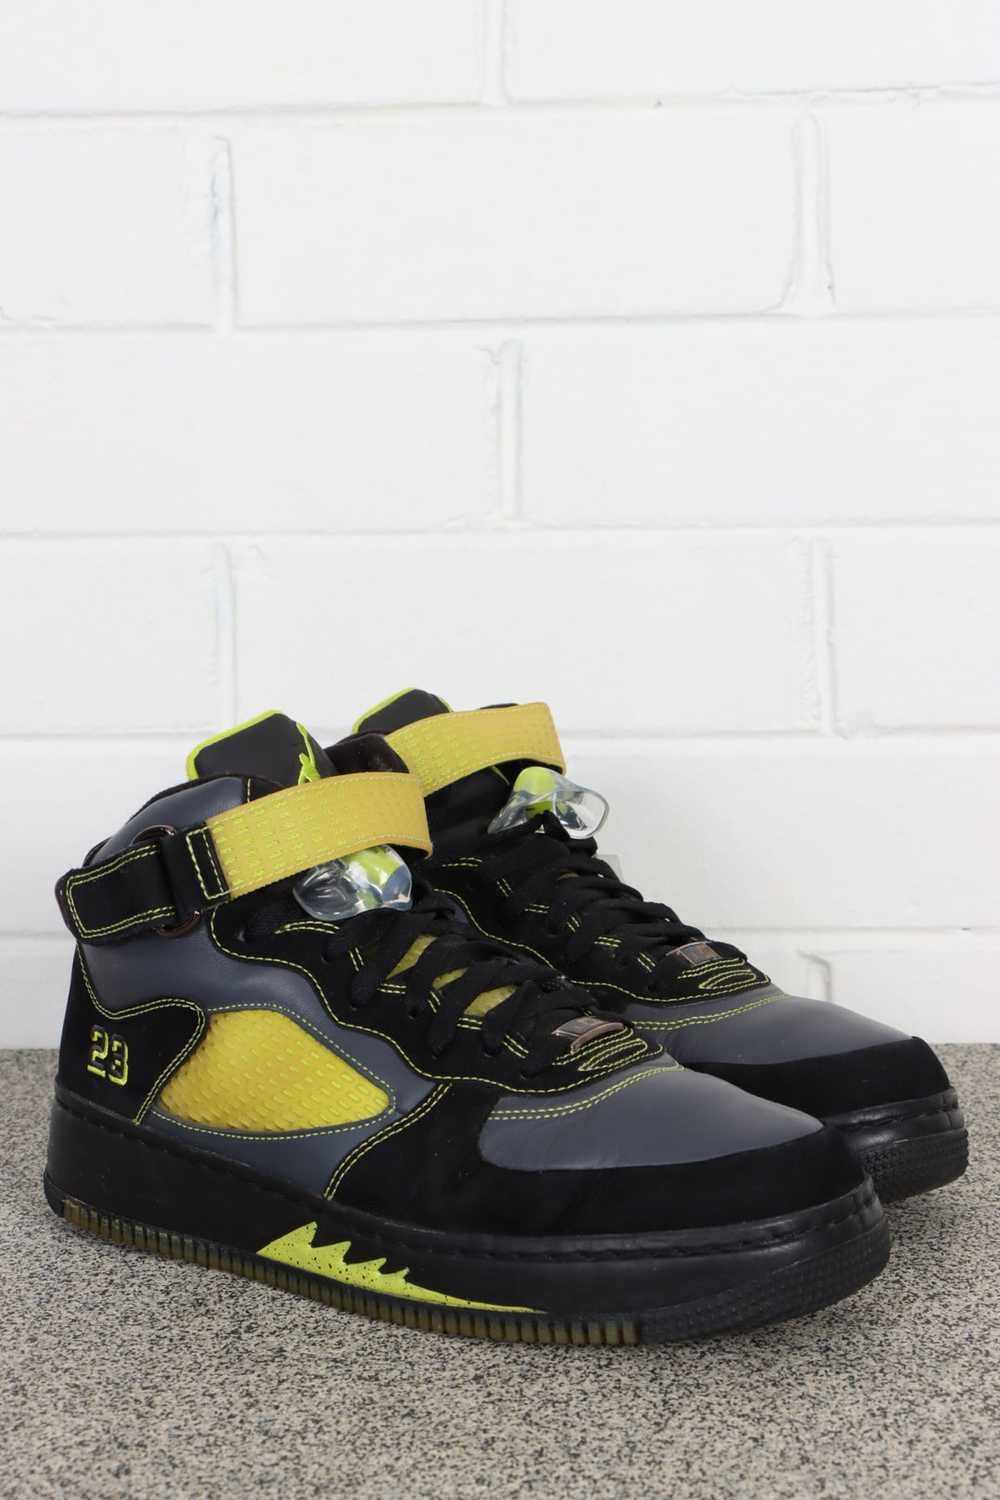 NIKE AIR JORDAN Fusion 5 Black / Cactus Sneakers … - image 1